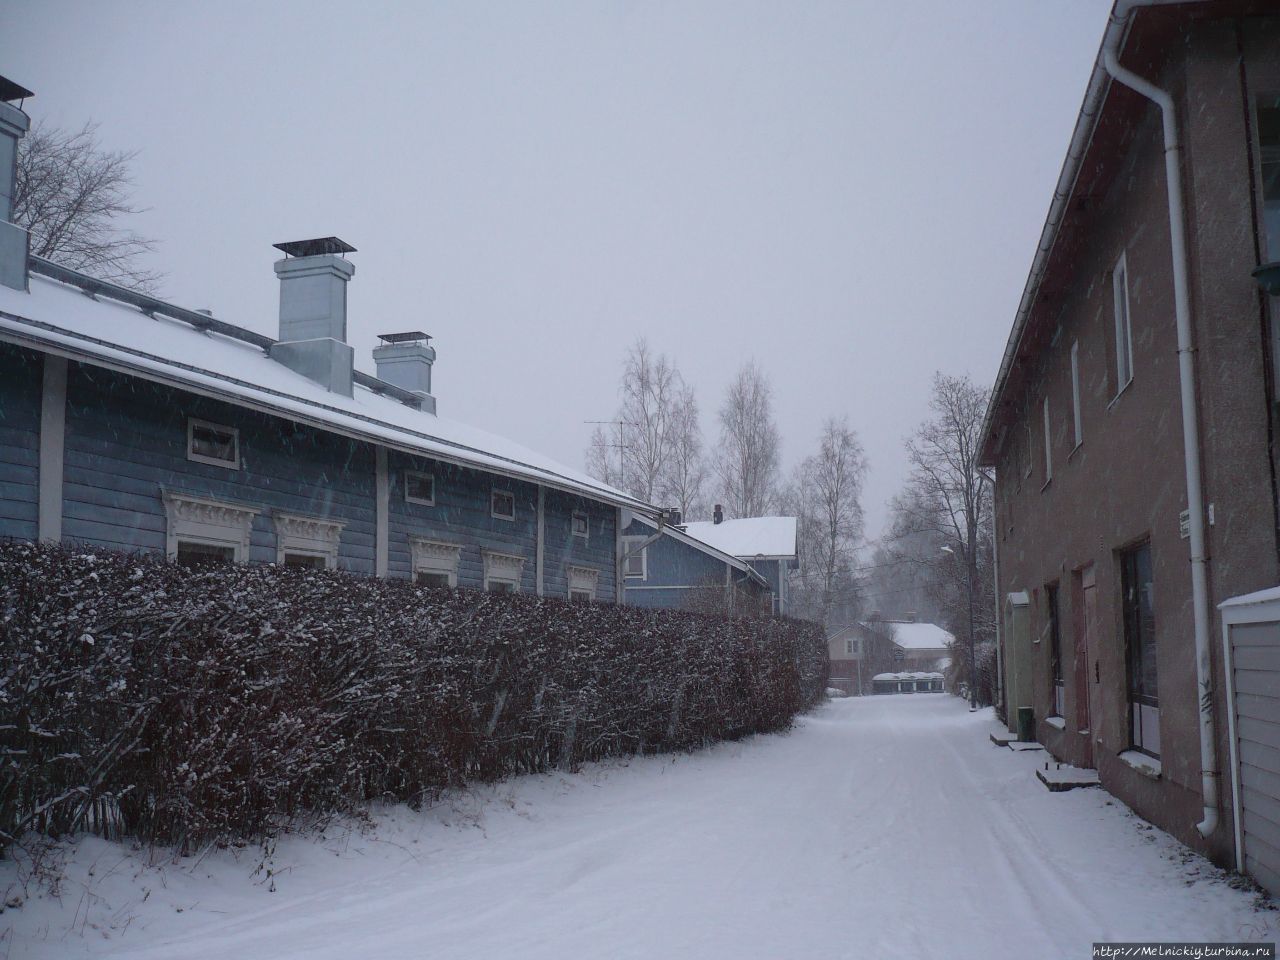 У природы нет плохой погоды, или прогулка по старому Борго Порвоо, Финляндия